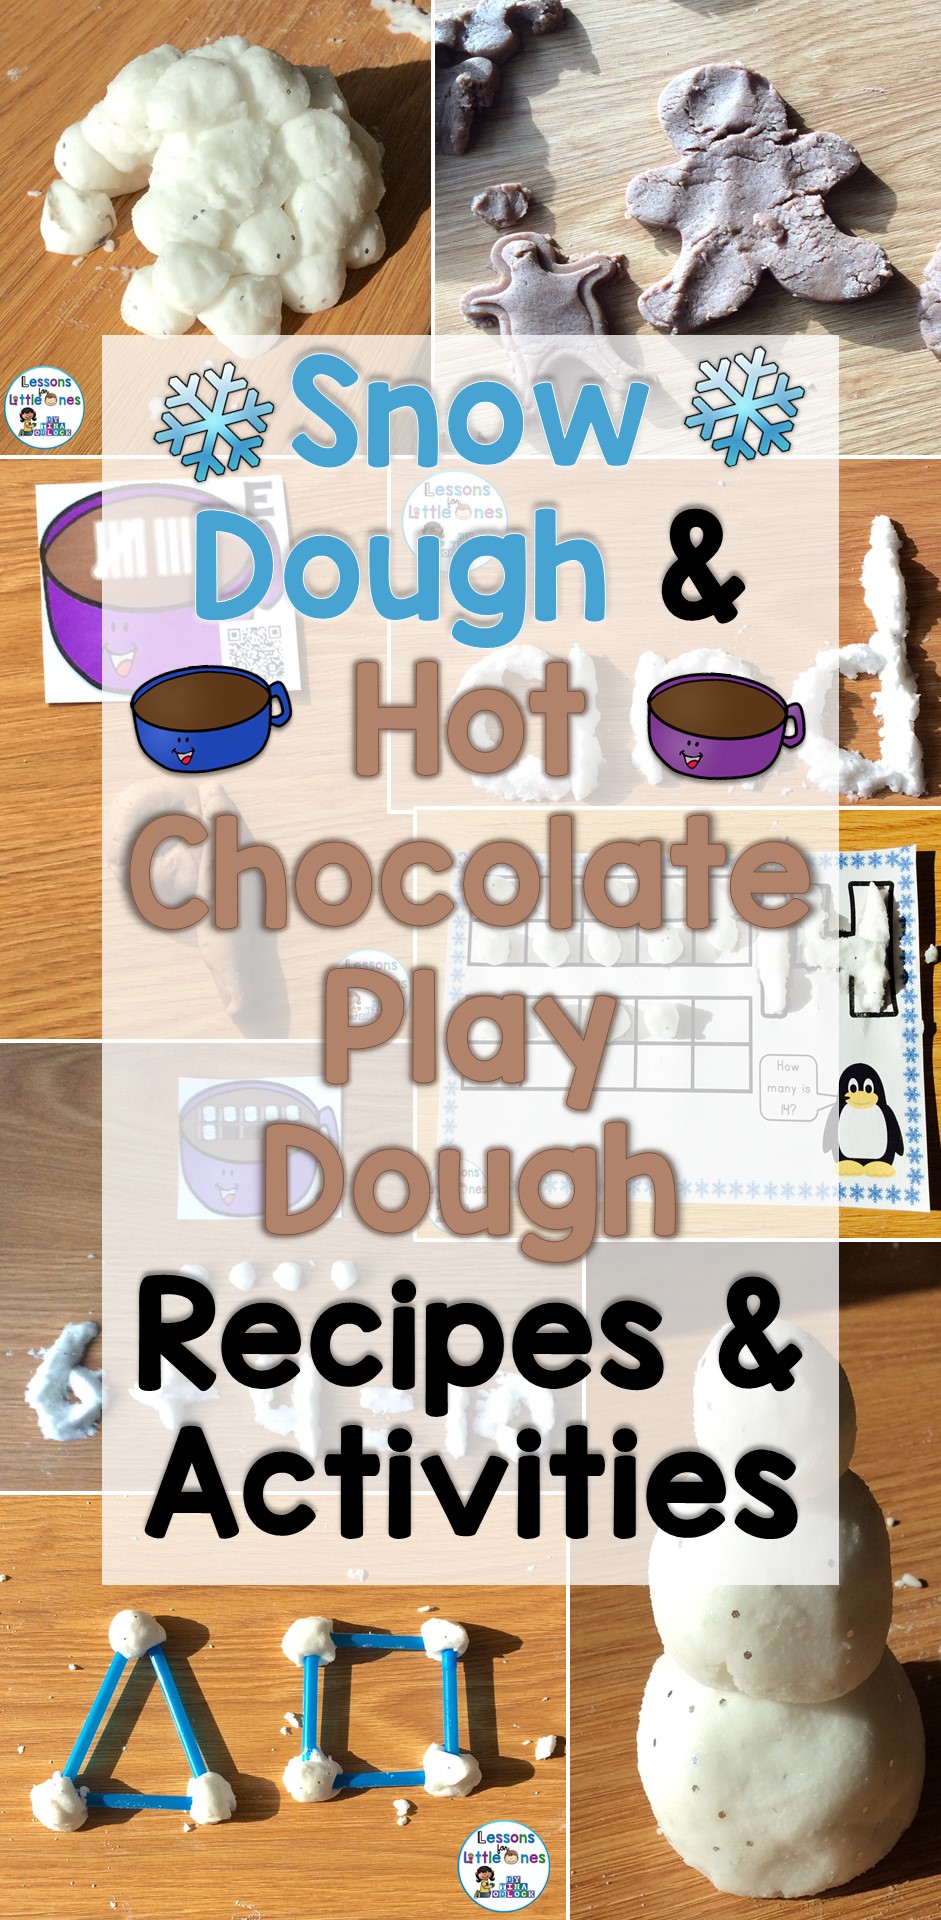 Snow Dough & Hot Chocolate Play Dough Recipes and Activities